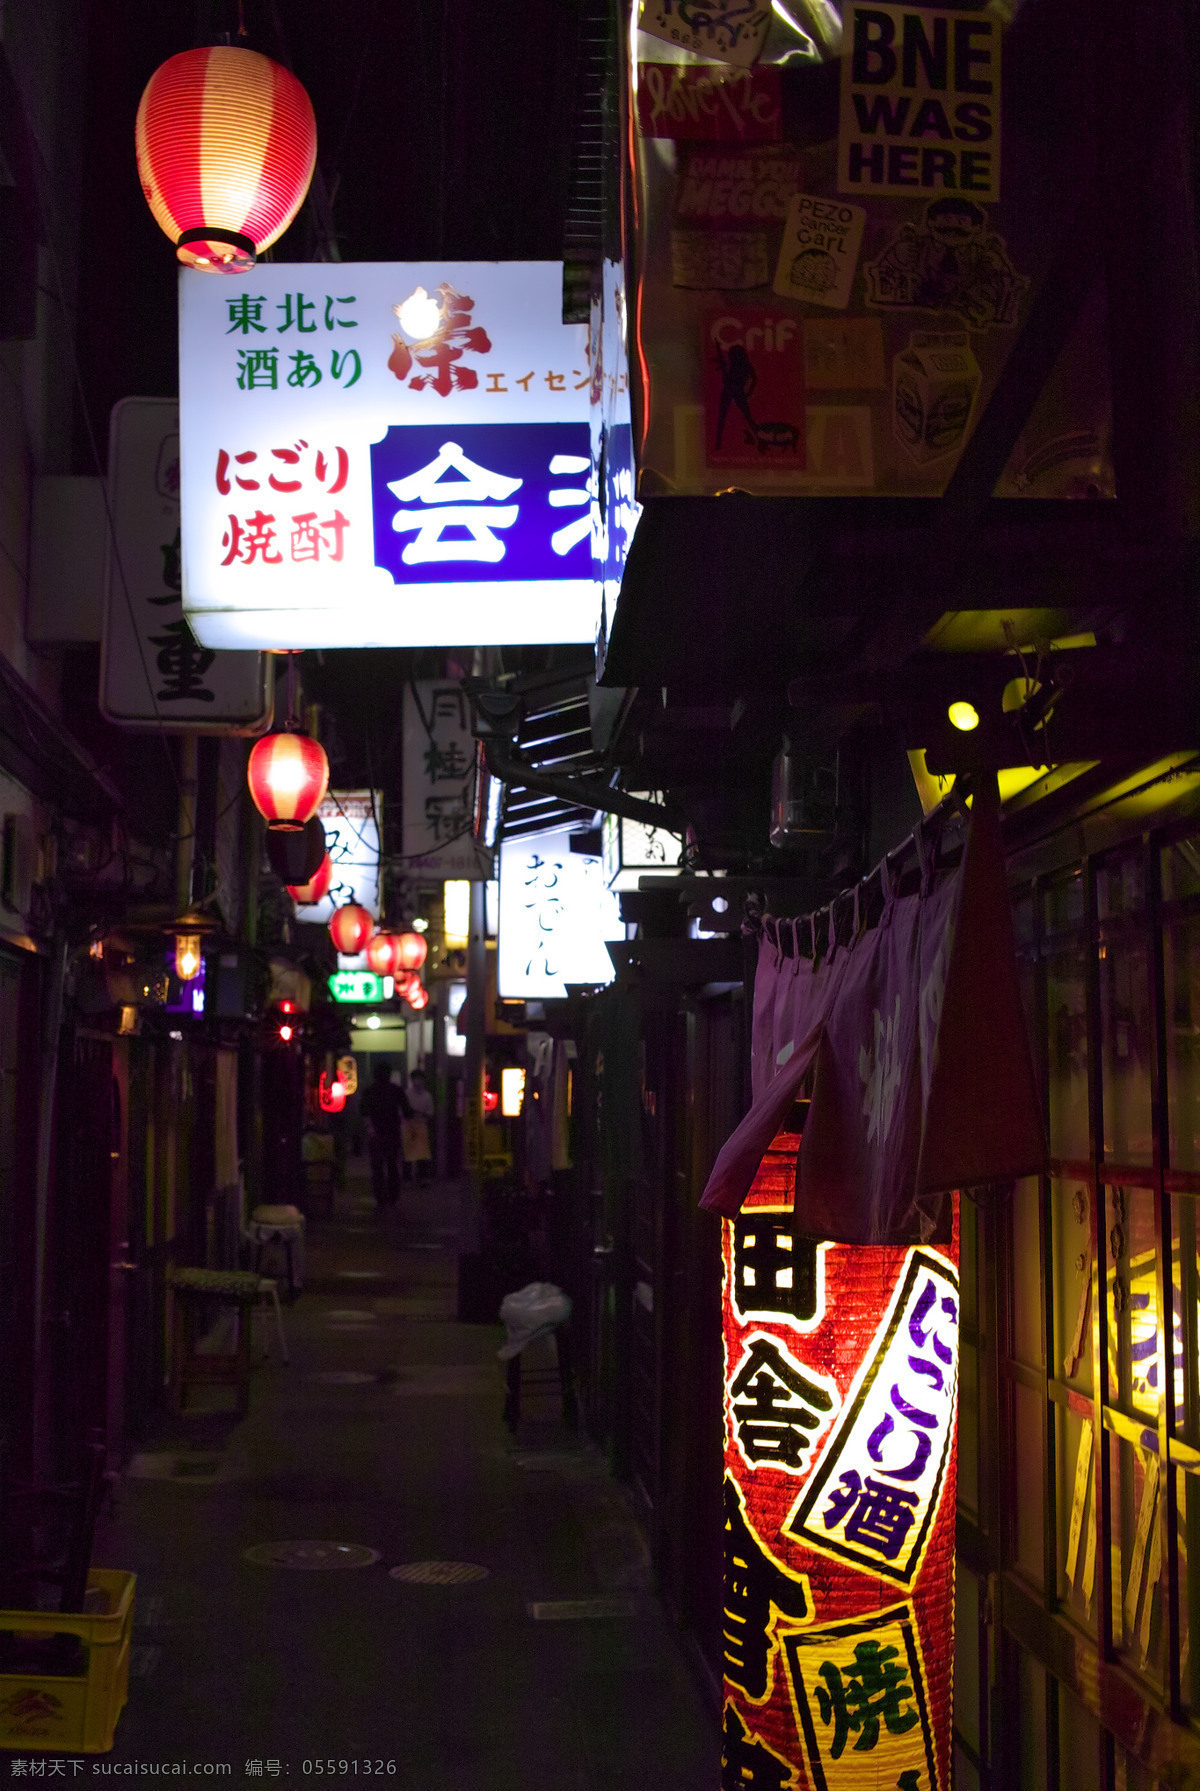 日本 街头 风景摄影 日本城市街景 街道 夜景 夜晚风景 街景摄影 城市风景 夜晚街道 日本街头 霓虹灯风景 生活场景摄影 旅游摄影 国外旅游